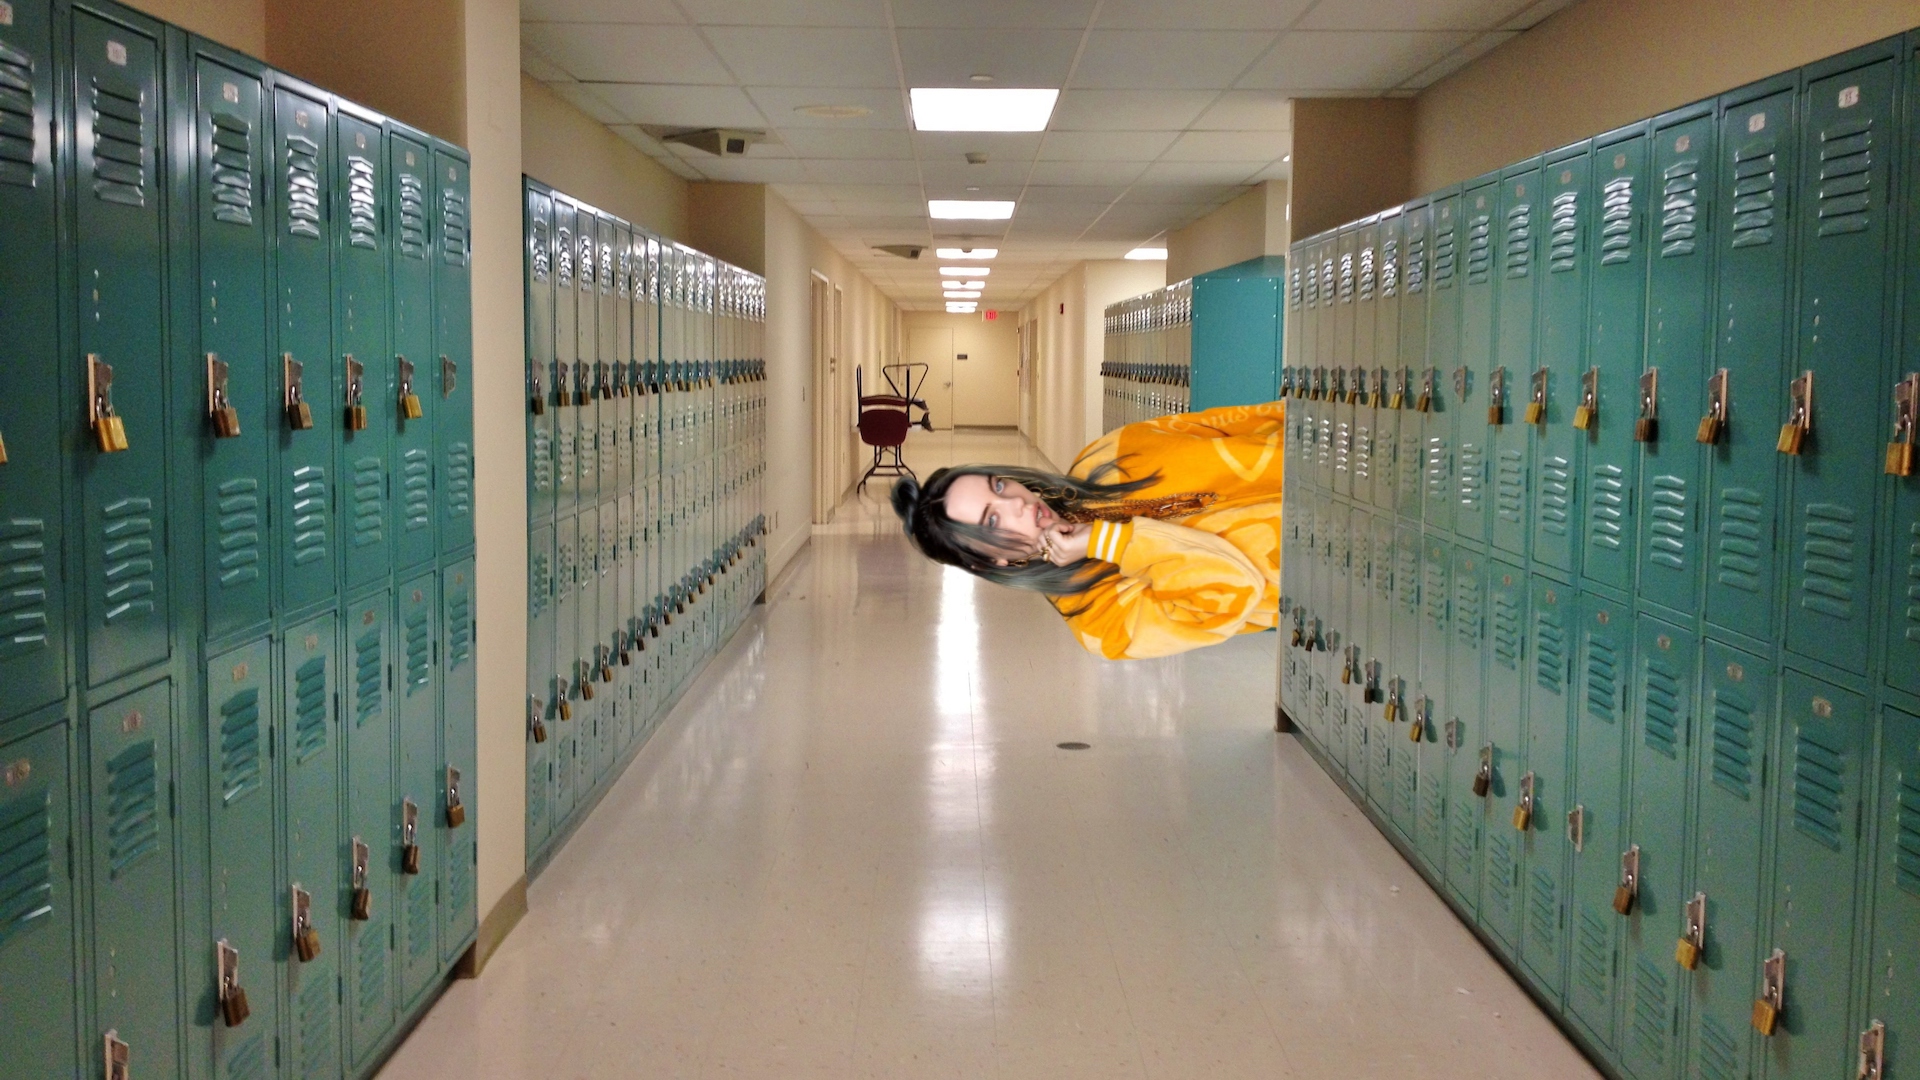 Billie Eilish in a school corridor